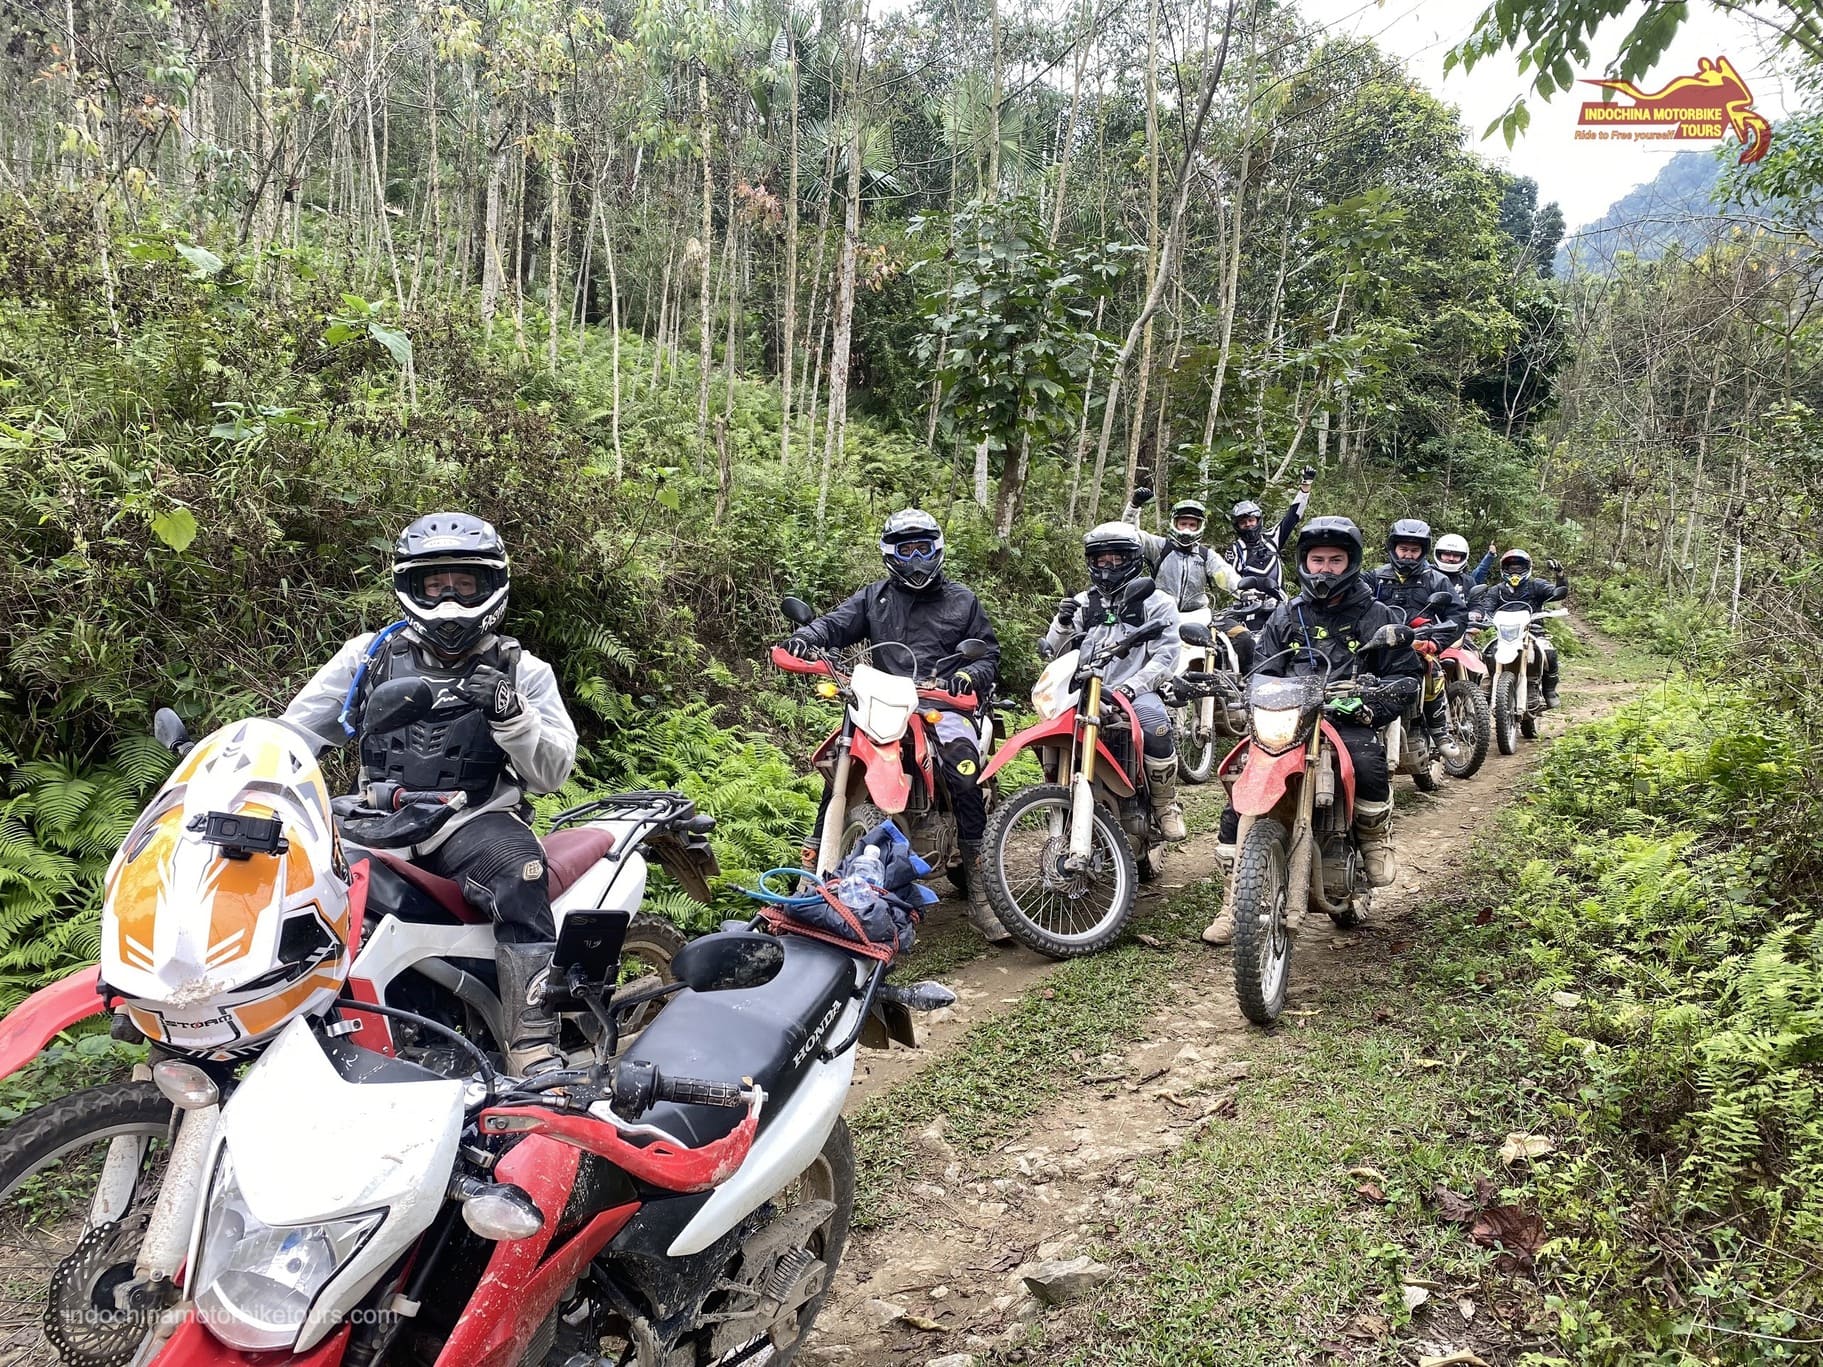 HANOI MOTORCYCLE TOUR TO THAC BA AND BA BE LAKES – 3 DAYS